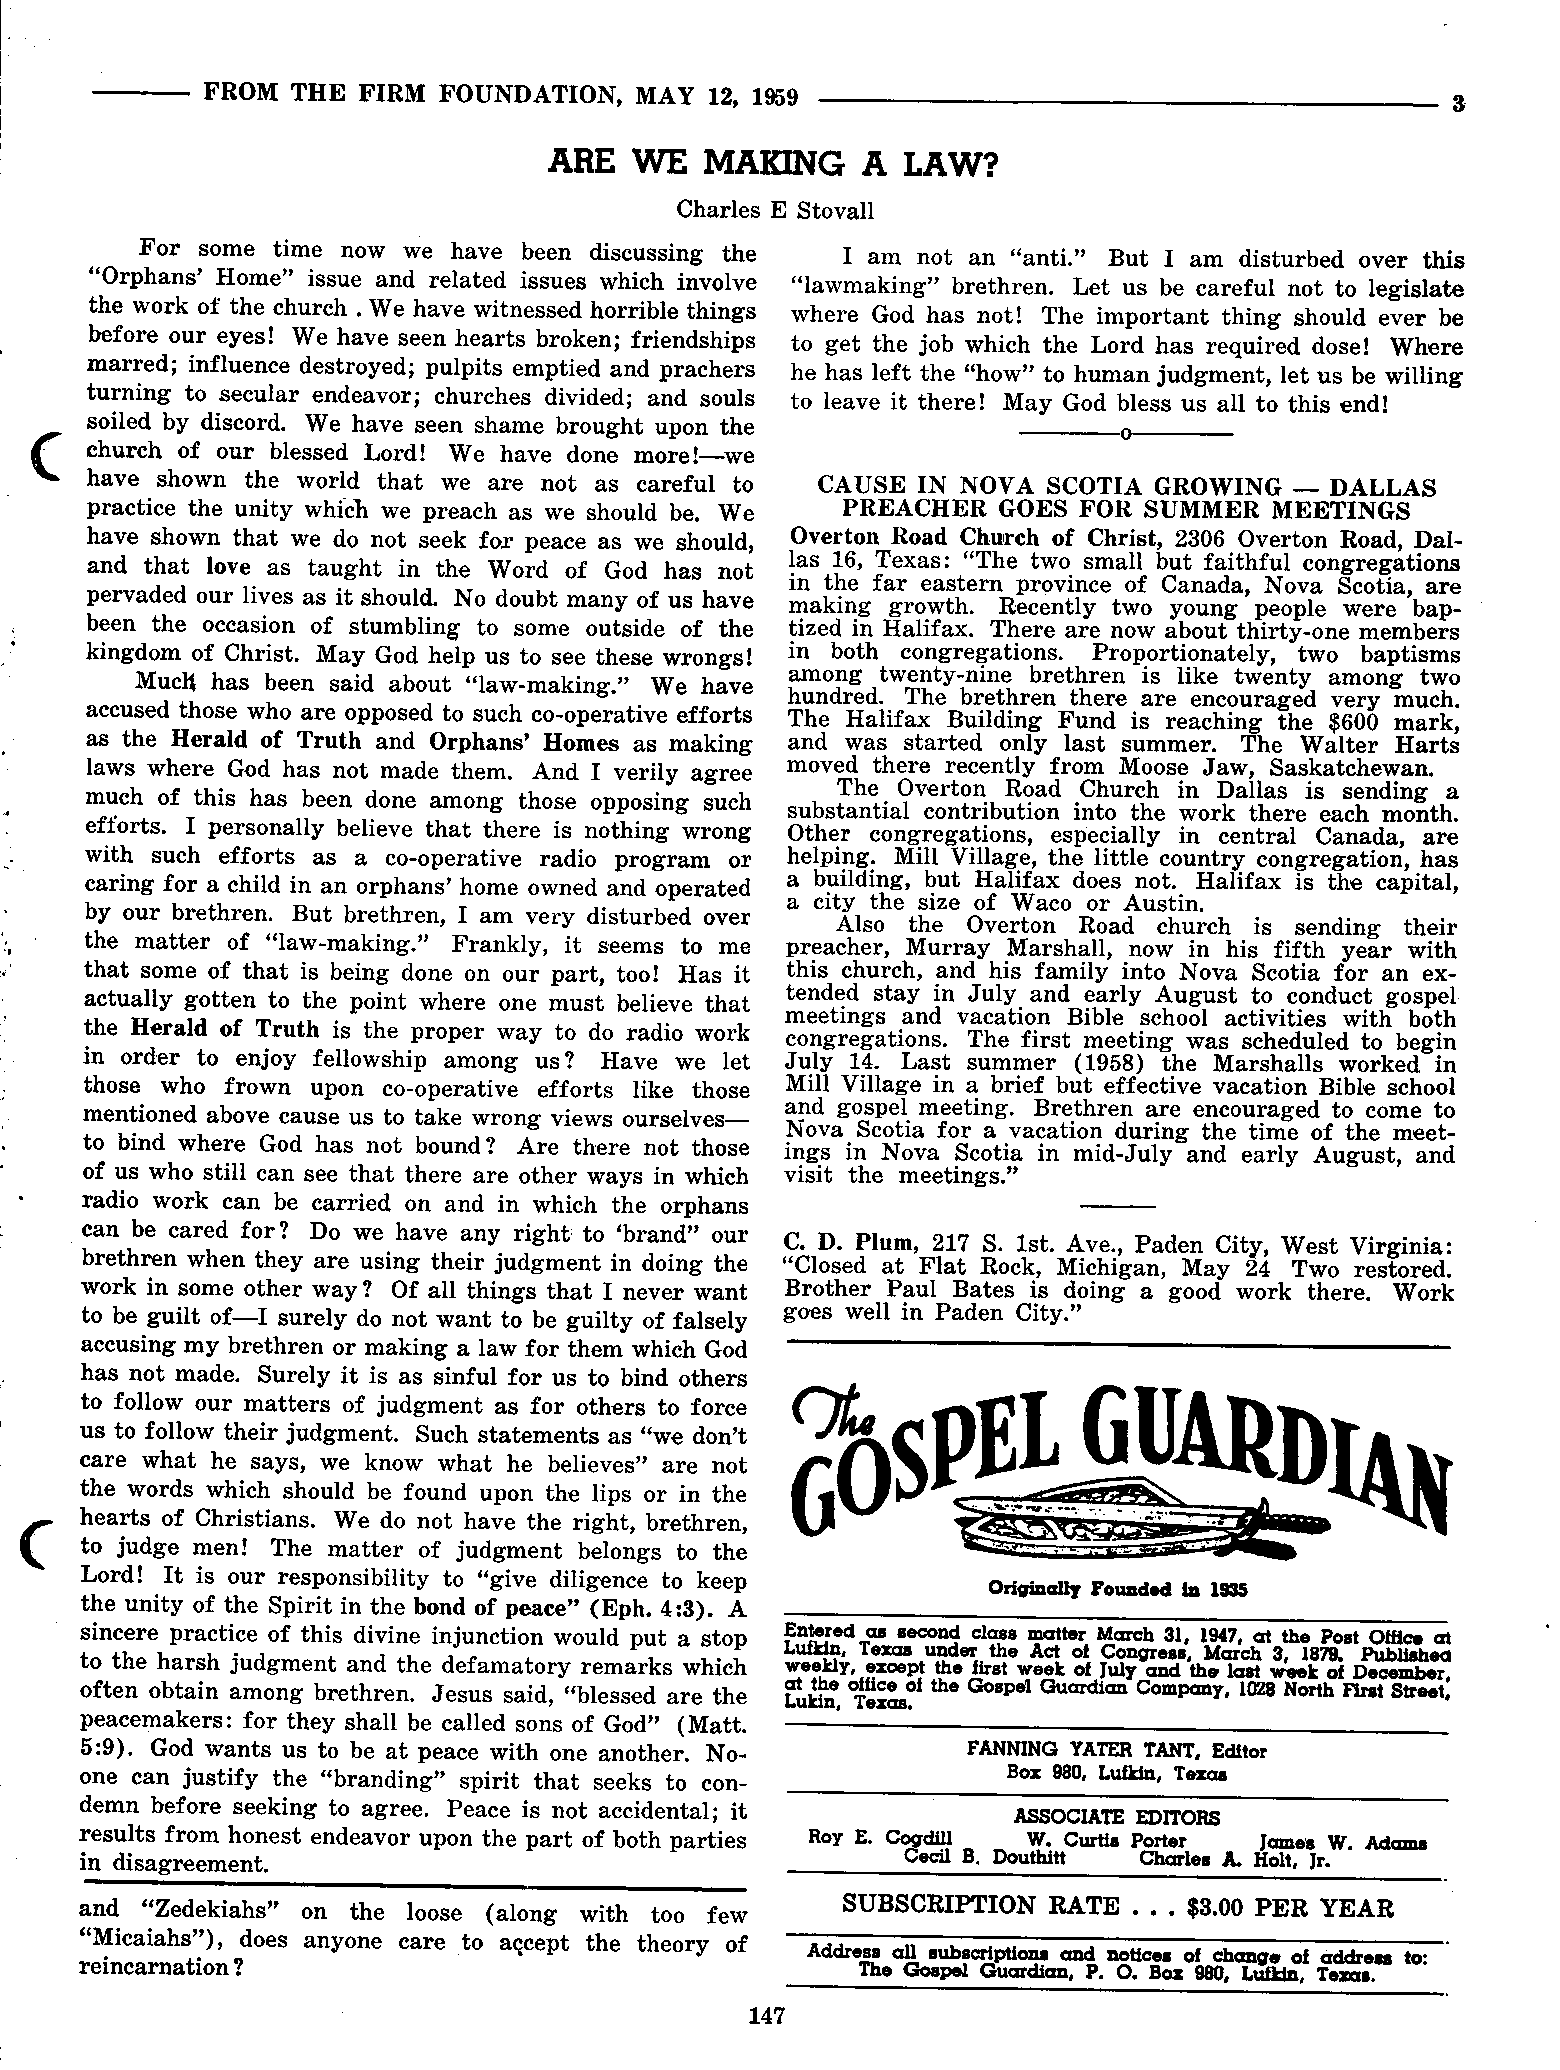 Gospel Guardian Original: Vol.11 No.10 Pg.3